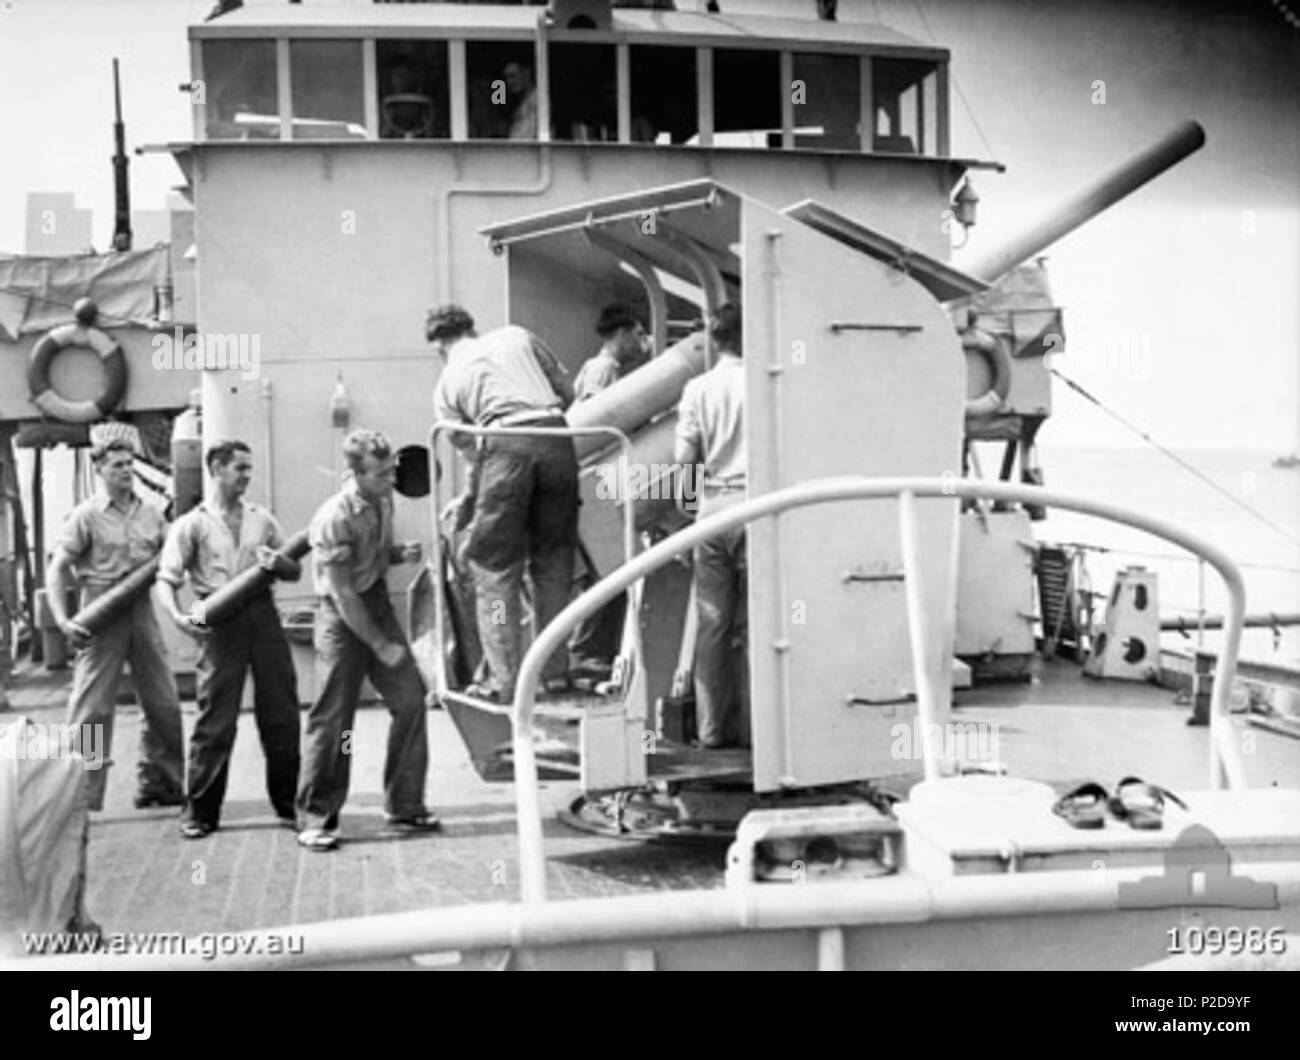 . AWM Bildunterschrift: "TARAKAN ISLAND. 1945-06-22. HMAS COWRA UND CREW, die zuvor in der MINESWEEPING UND KONVOI arbeiten rund um TARAKAN ISLAND, begannen die Vorbereitungen für eine Reise nach MOROTAI. Gezeigt, DIE MITGLIEDER DER BESATZUNG ÜBEN GUN BOHRER AUF DEM SCHIFF DER Rüstung, ein 4 Zoll M 19 QF Gewehr. Personal identifiziert werden: - PM4633 VOLLMATROSEN, C.D. gehört haben (1); 21756 Petty Officer J. L. GRAU (2); B2344 VOLLMATROSEN, H.W. MOESSINGER (3); PM 2160 führende SEAMAN N.R. GERRARD (4); PM3489 VOLLMATROSEN, E. A. THOMPSON (5); PM 6741 VOLLMATROSEN, N. B. SHEPHERD (6); PA 4352 VOLLMATROSEN I. S. RAUCHER (7).". 22. Juni 1945. Nicht recor Stockfoto